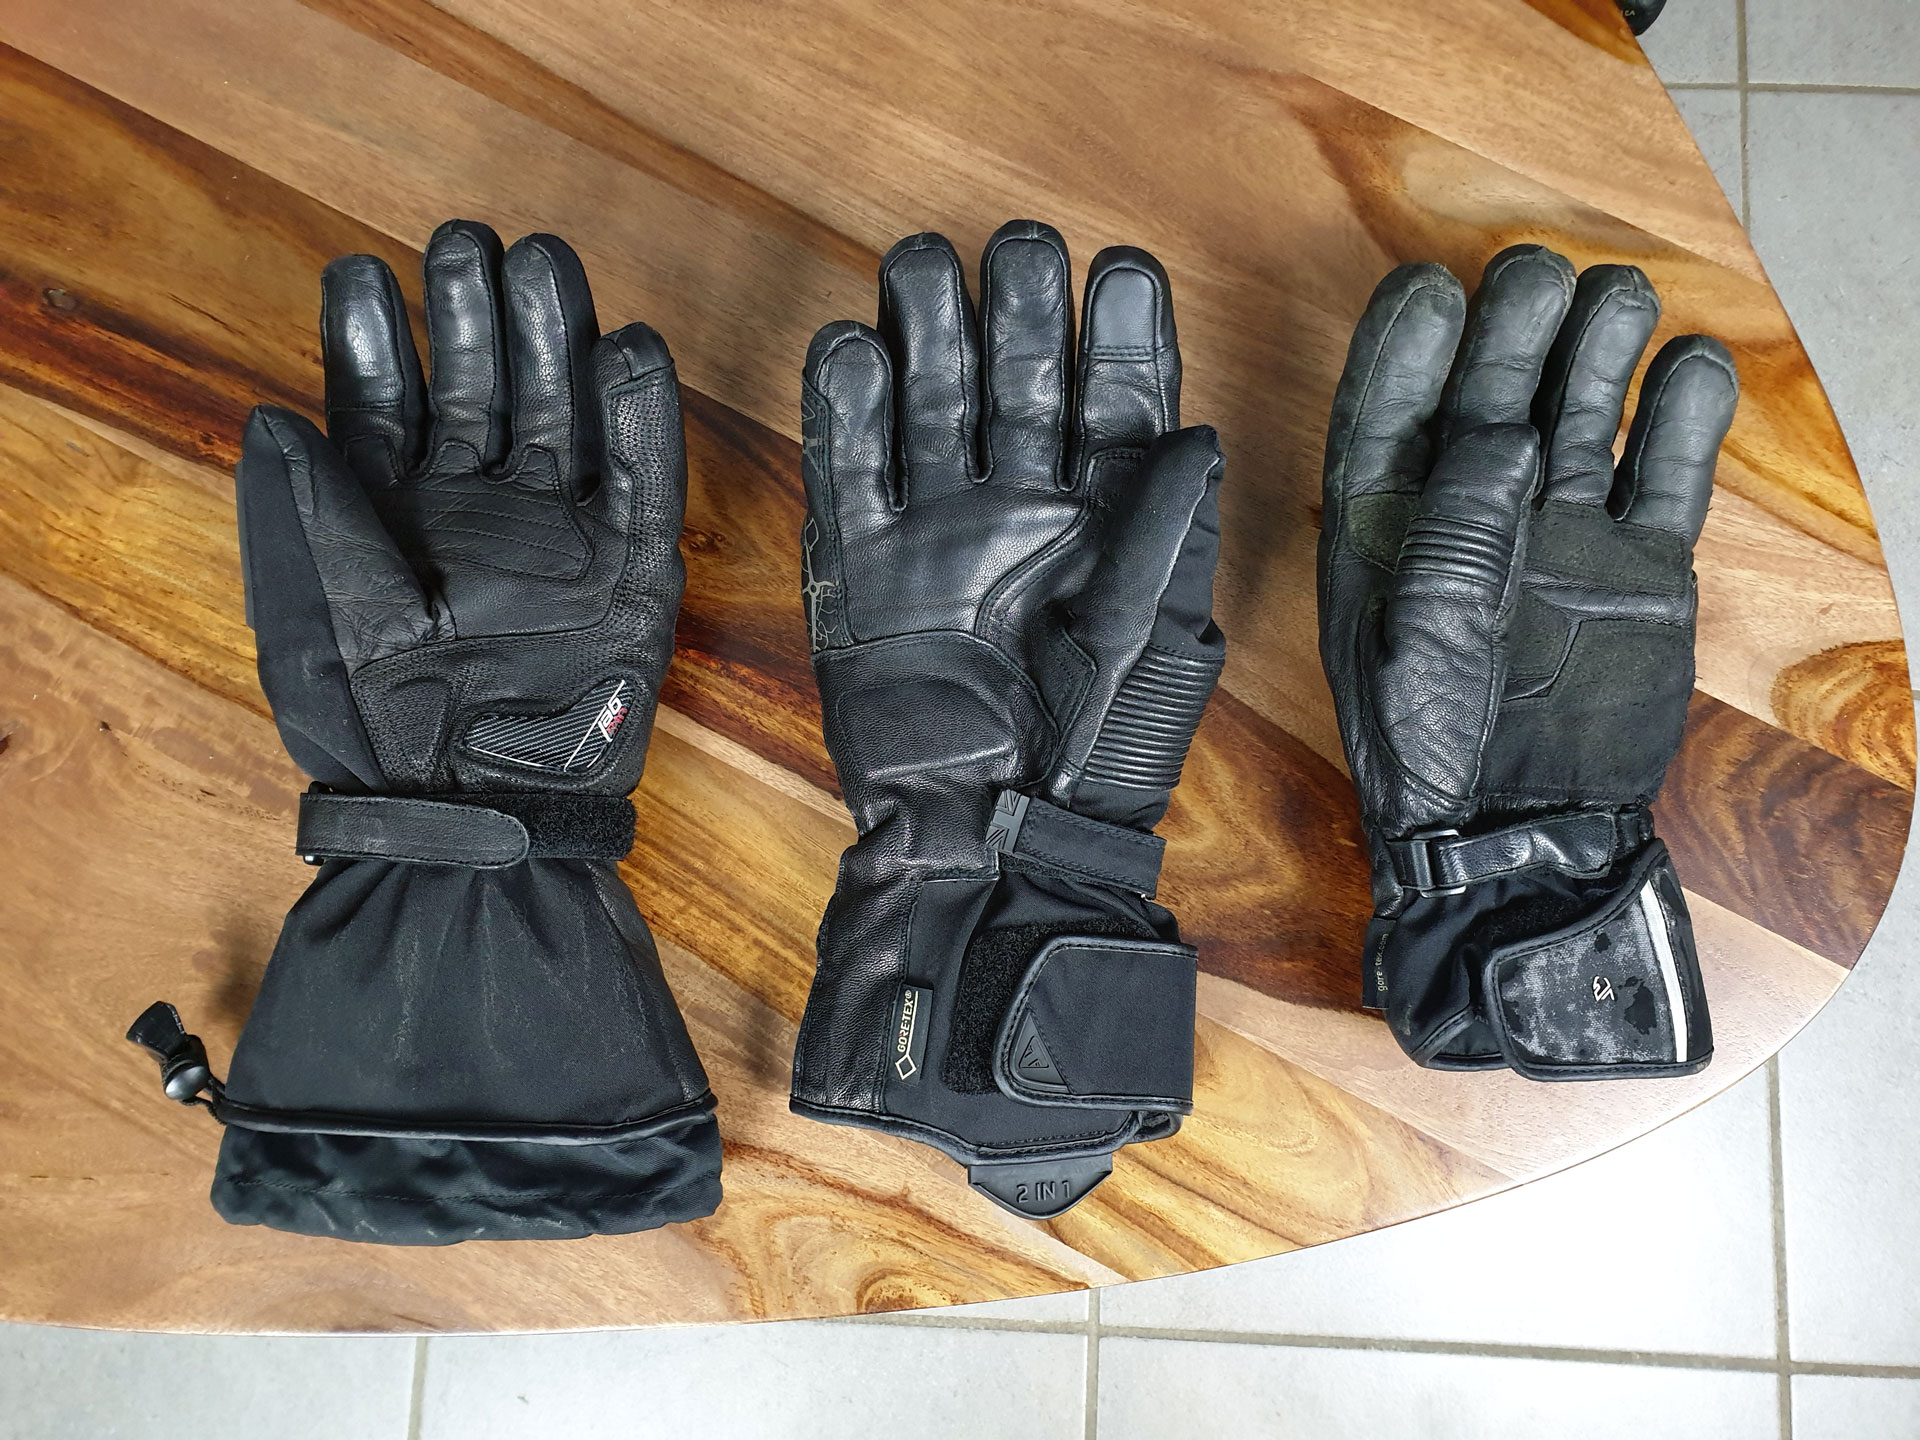 Comment résister à cette paire de gants avec une doublure chauffante et ce  nouveau petit prix ?